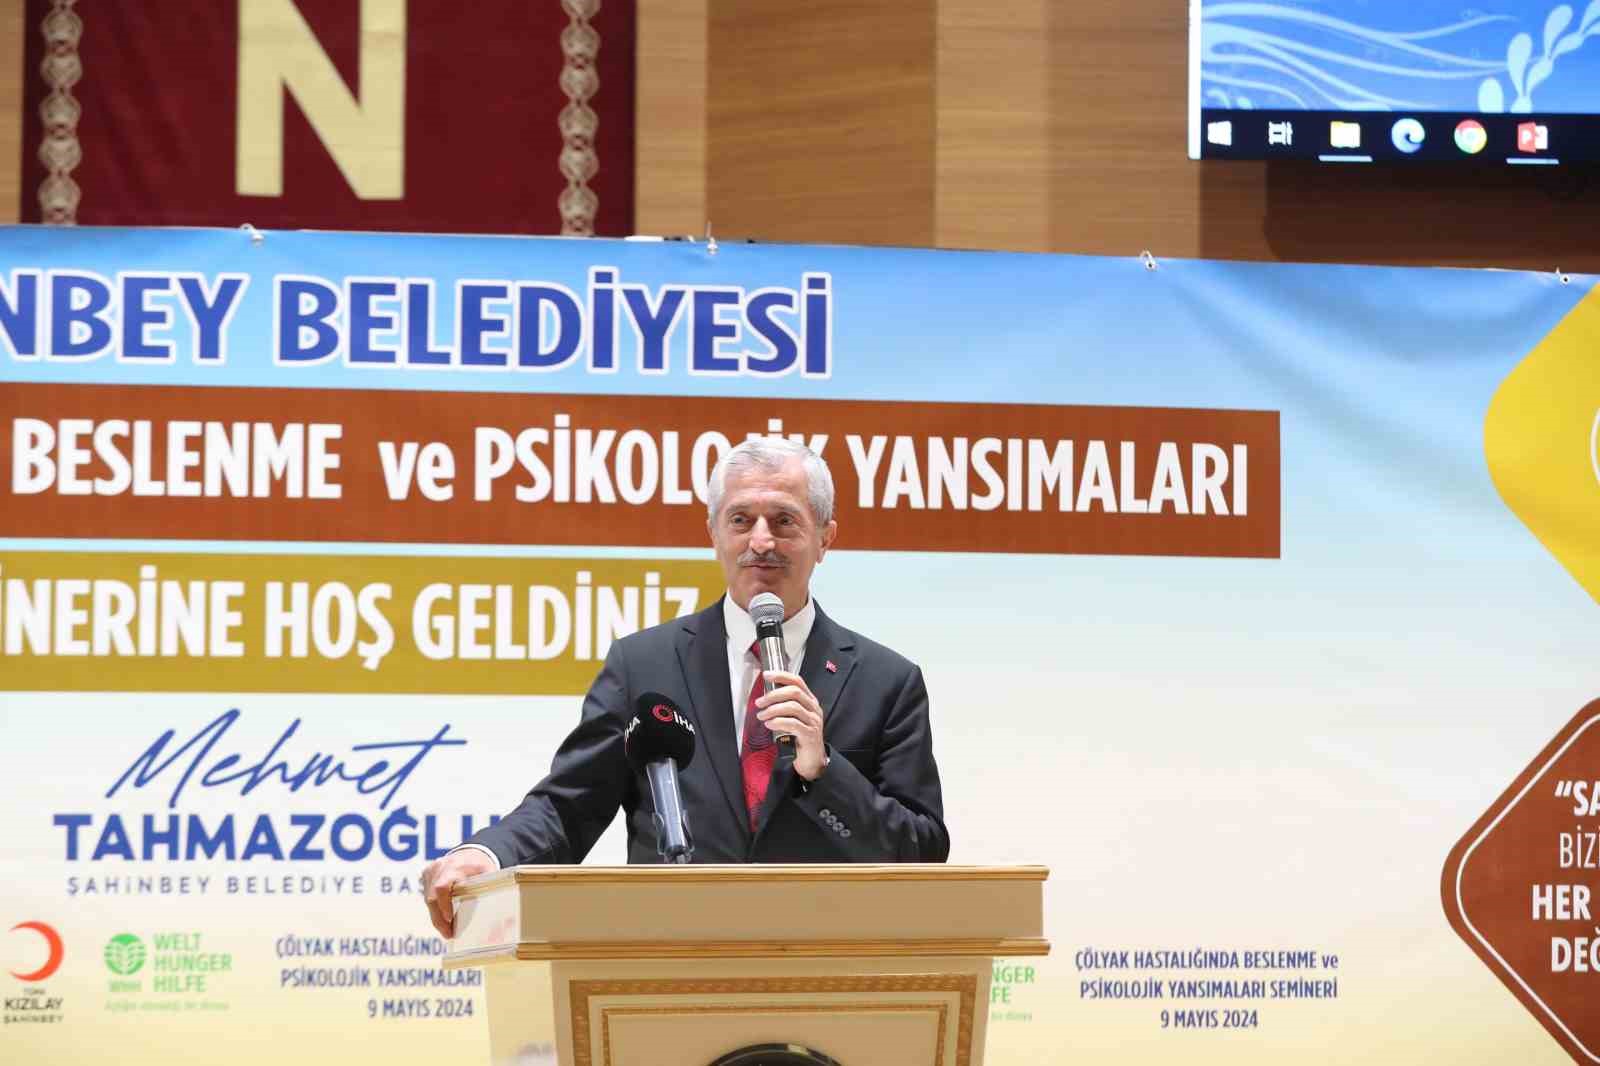 Şahinbey’de 9 Mayıs Dünya Çölyak Günü Semineri düzenlendi
